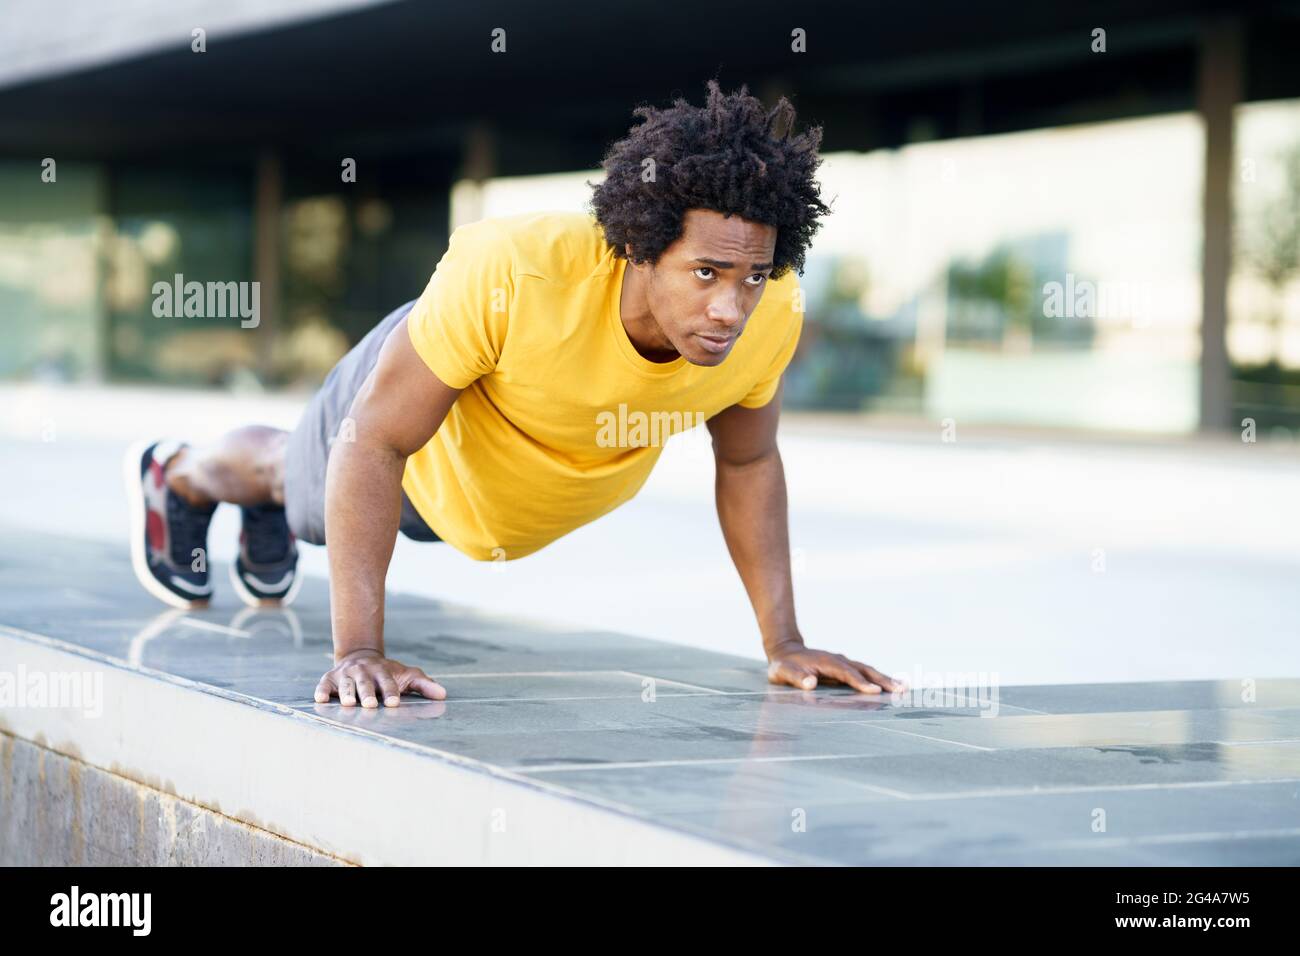 Hombre negro haciendo ejercicio de la inmersión del tríceps en banco de la calle de la ciudad. Foto de stock